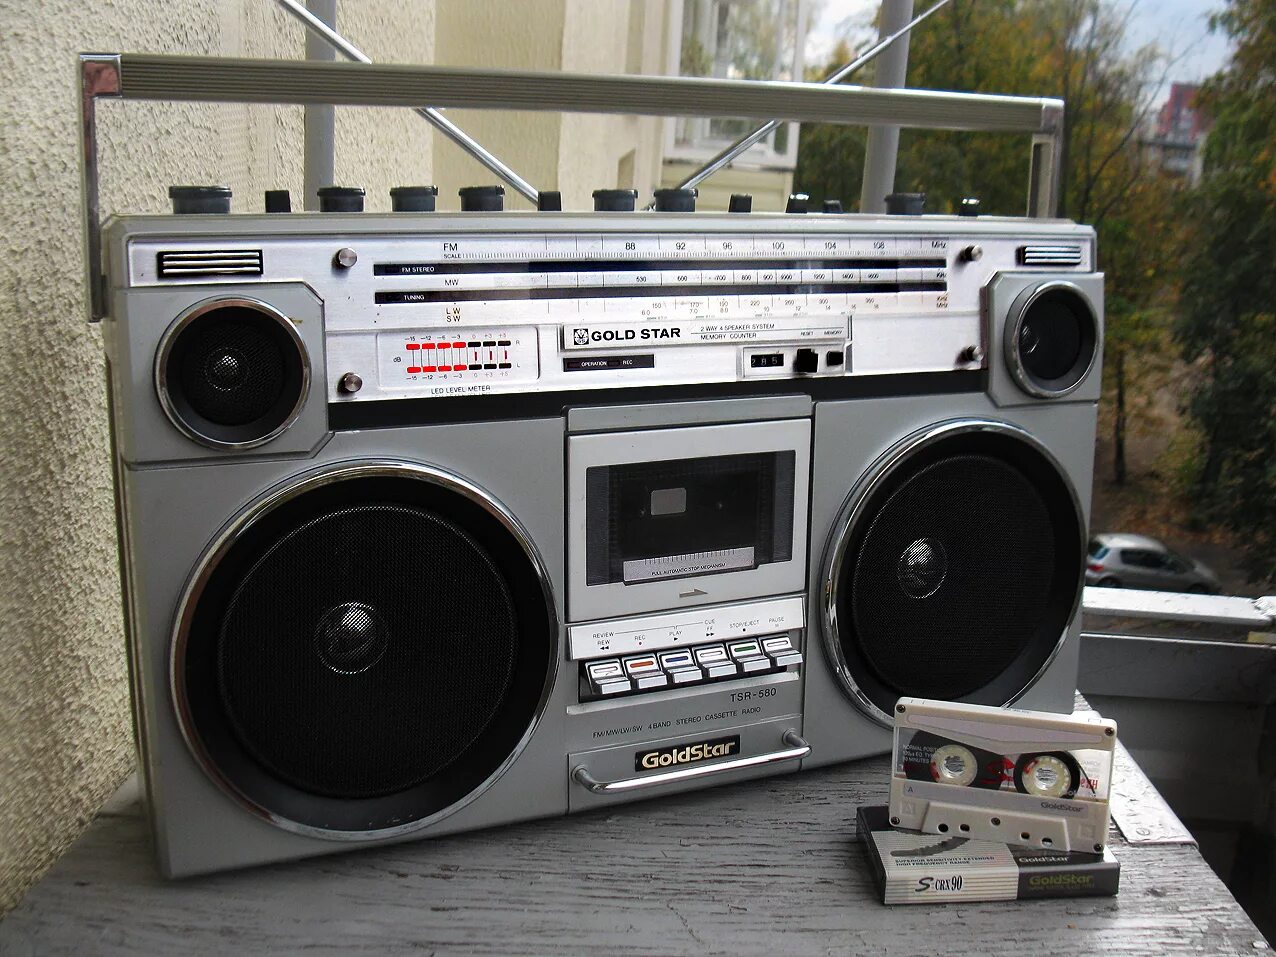 Новые кассетные магнитофоны. Магнитофон Голдстар 2 кассетный. Двухкассетный магнитофон GOLDSTAR. Магнитофон в 90х Голд Стар. Магнитола из 90-х.